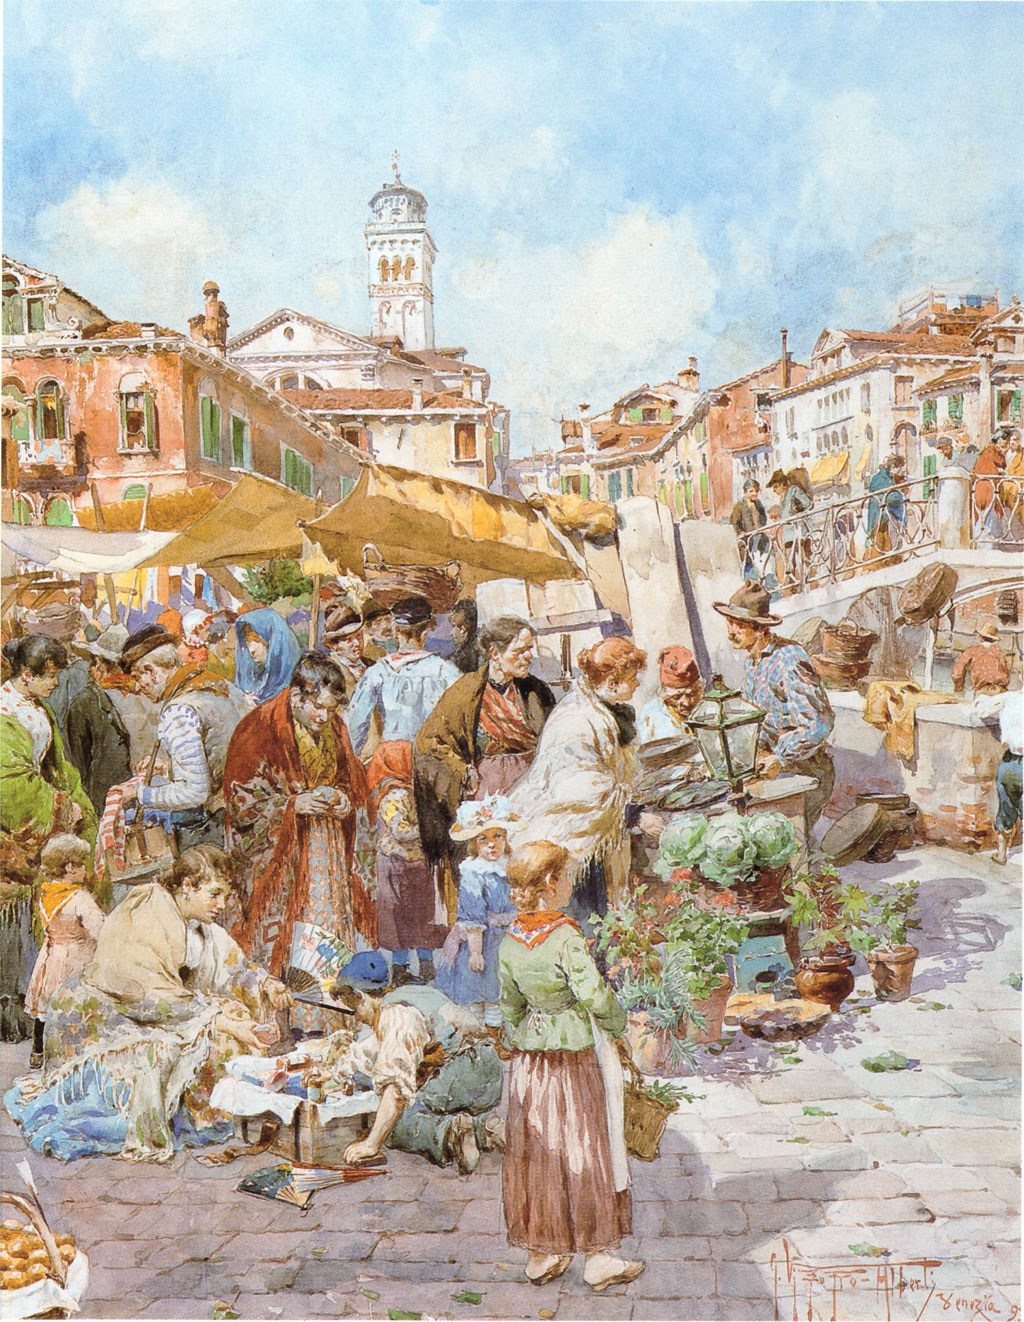 giuseppe-vizzotto-alberti-venezia-scena-di-mercato-1893